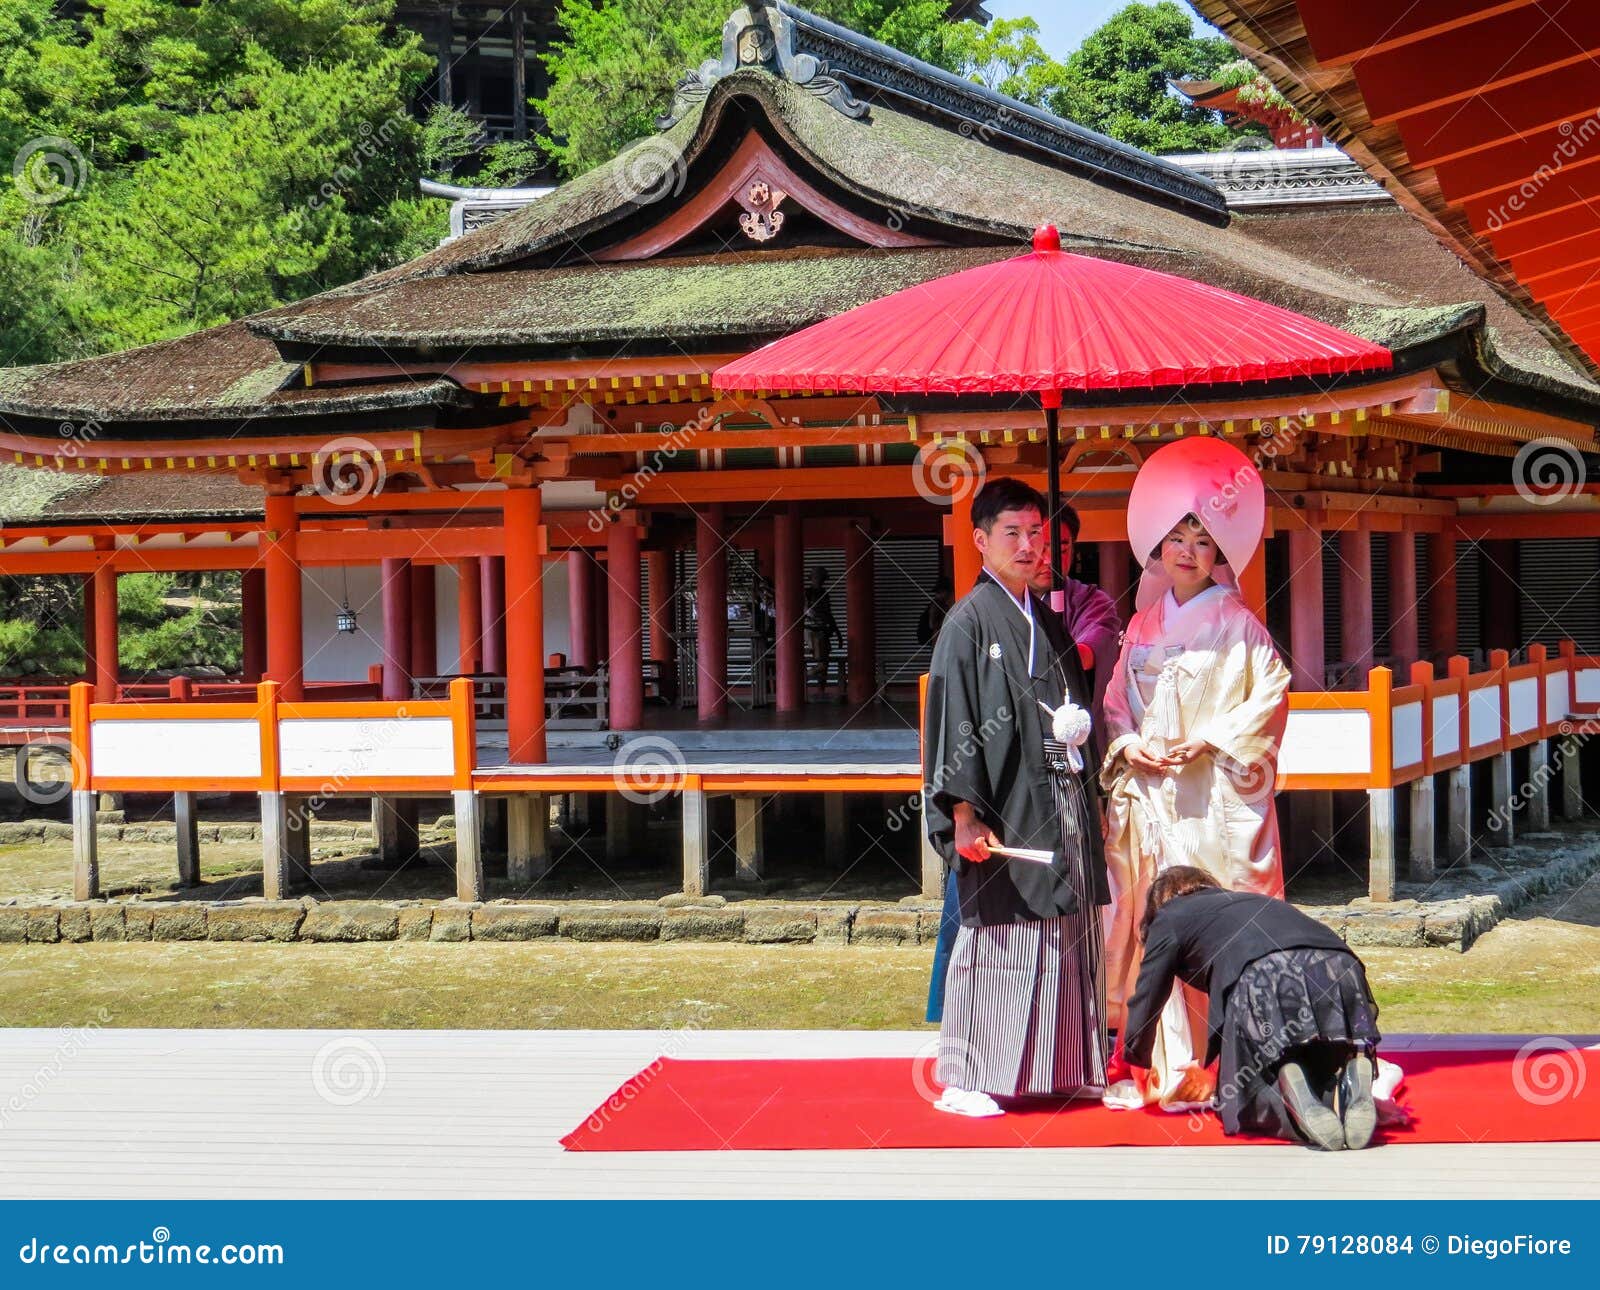 日本 婚礼 传统的 - Pixabay上的免费照片 - Pixabay